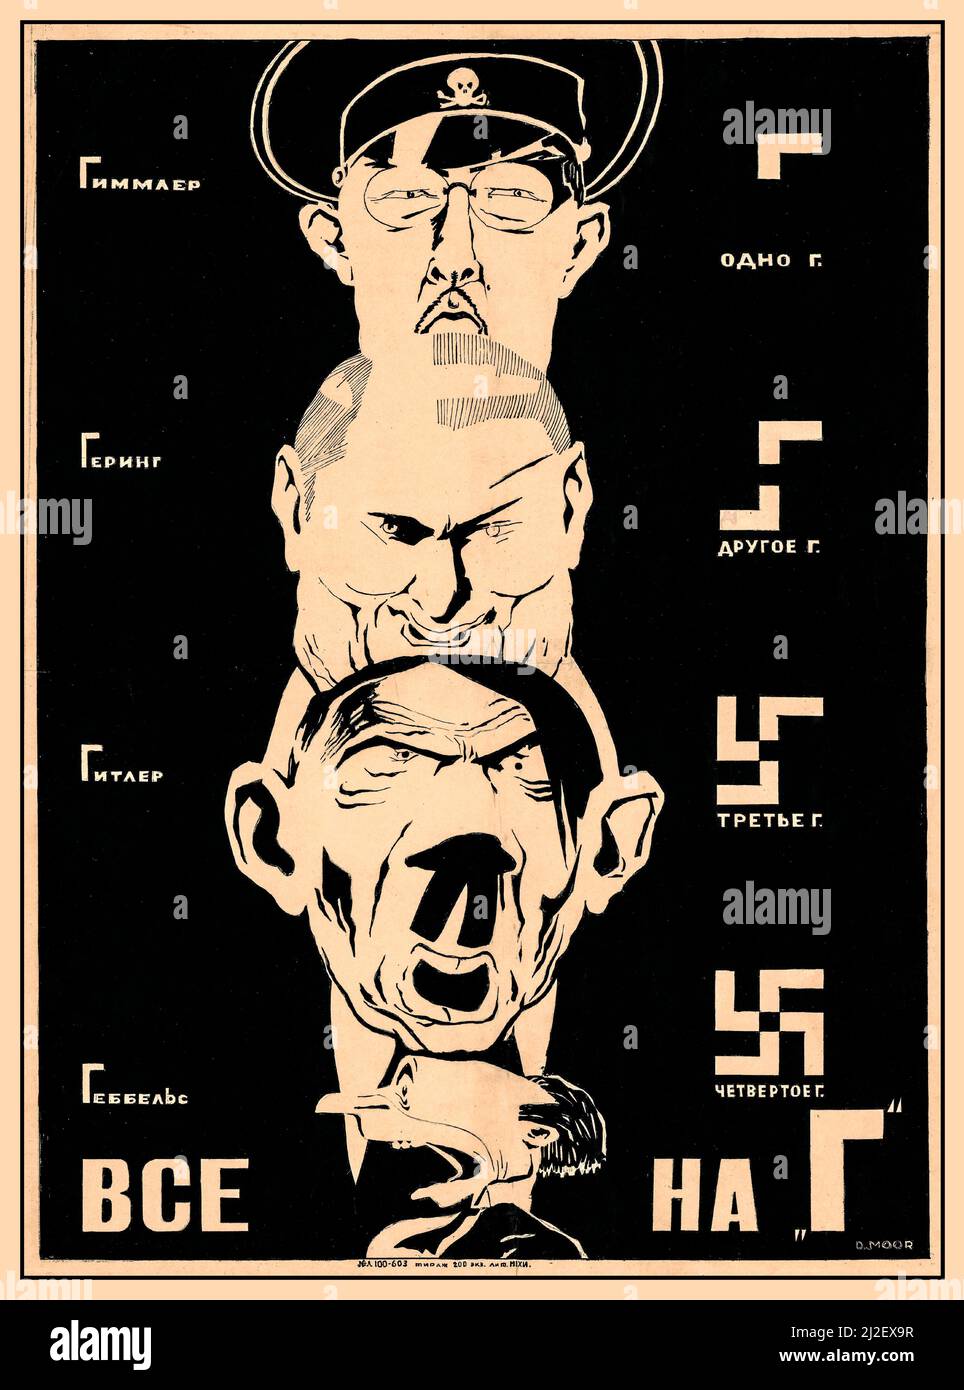 Poster anti-nazista russo vintage del WW2, con i migliori nazisti, Heinrich Himmler, Hermann Goring, Adolf Hitler e Joseph Goebbels. Simbolo di swastika che si forma insieme alle caricature in pieno Swastika 1941 seconda guerra mondiale Foto Stock